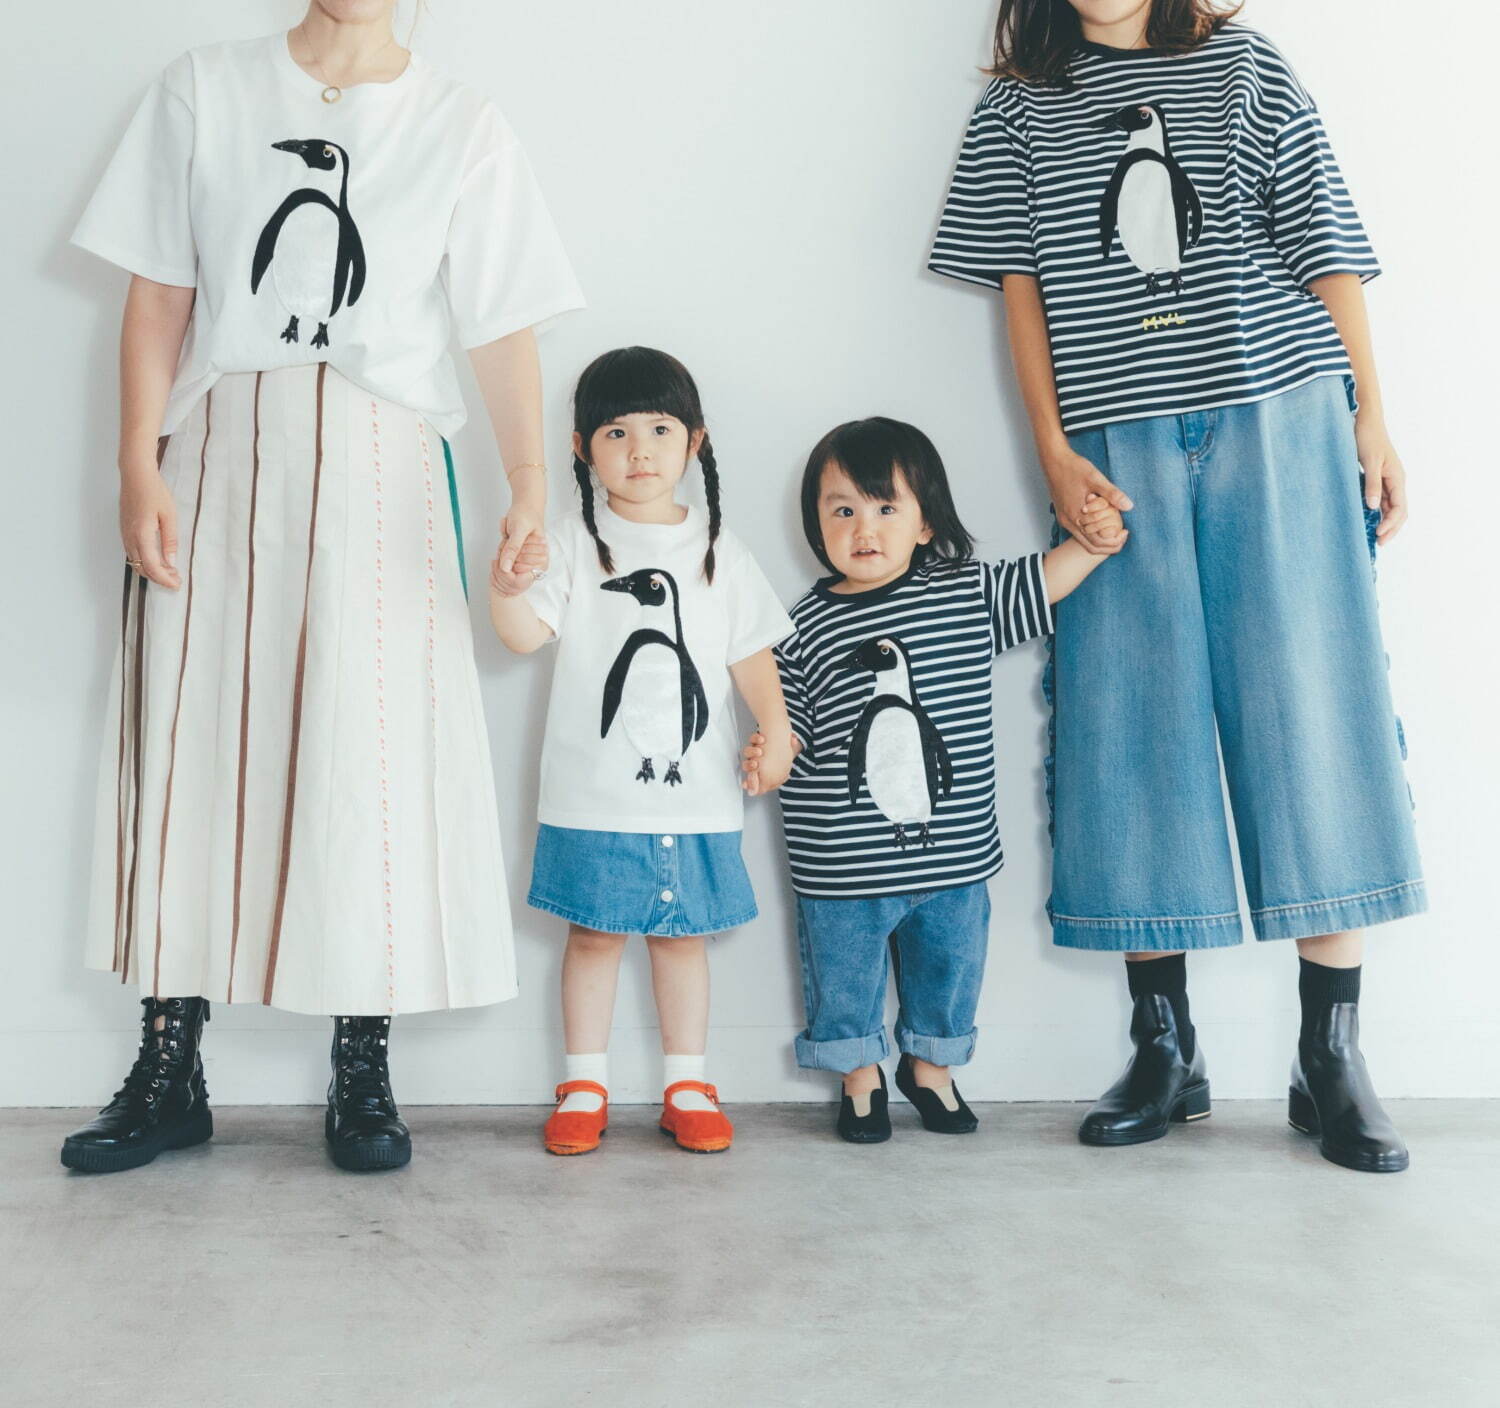 ペンギンアップリケTシャツ (36/38/40サイズ) 24,200円、(キッズ110㎝サイズ) 19,800円